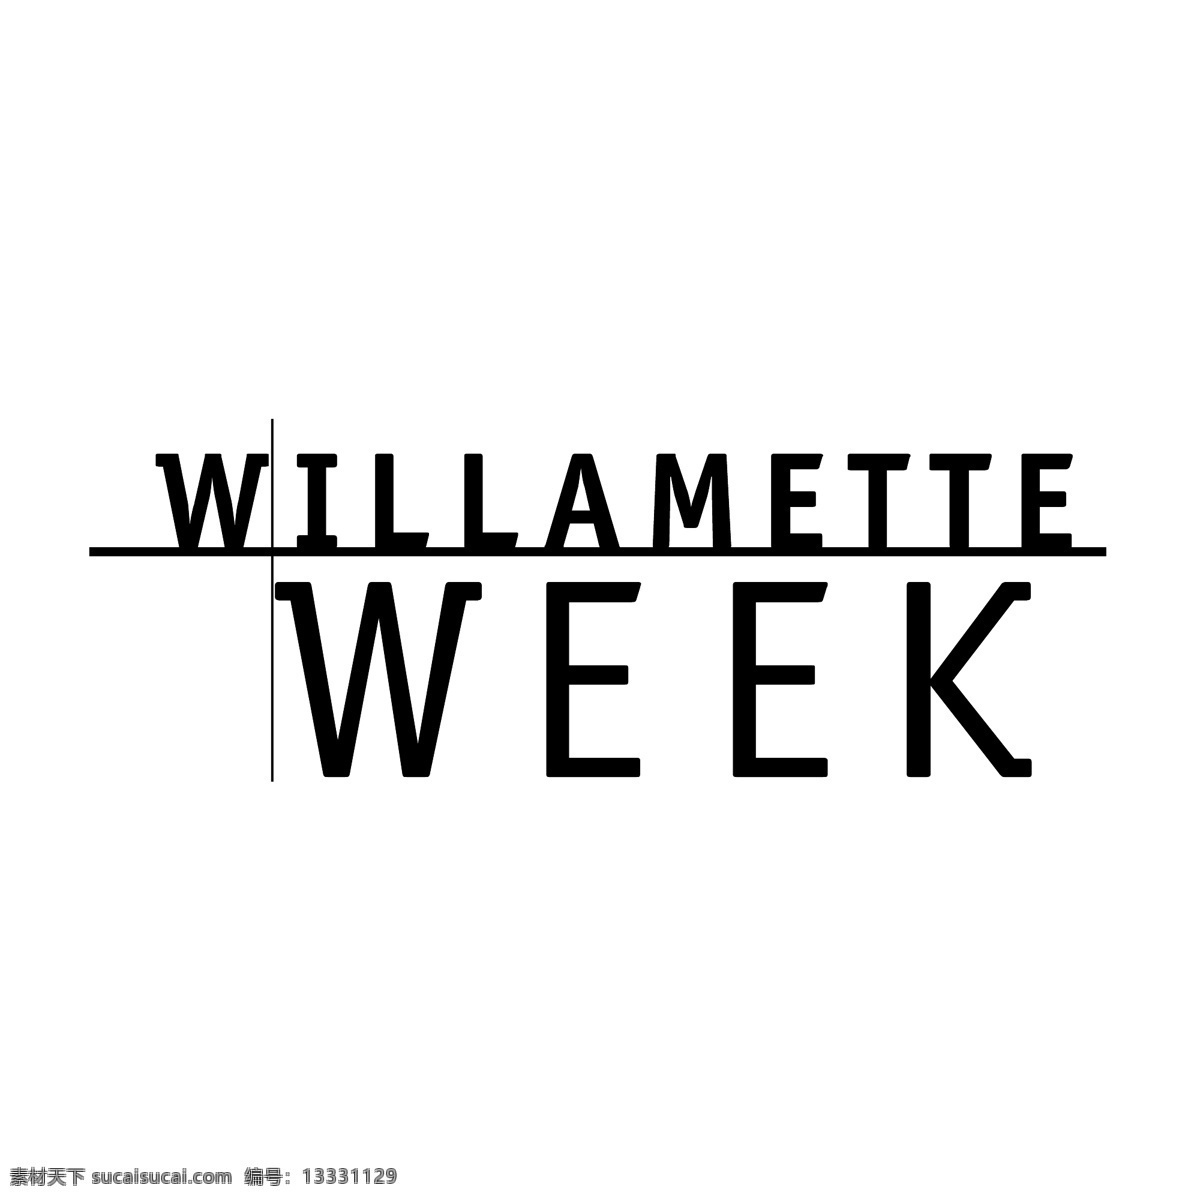 周 威拉米特河 威拉米特周报 本周 免费矢量周 上周 周周免费下载 向量 艺术周 本周的照片 一个 星期 向量的这一周 一周 一周了 这周 矢量图 建筑家居